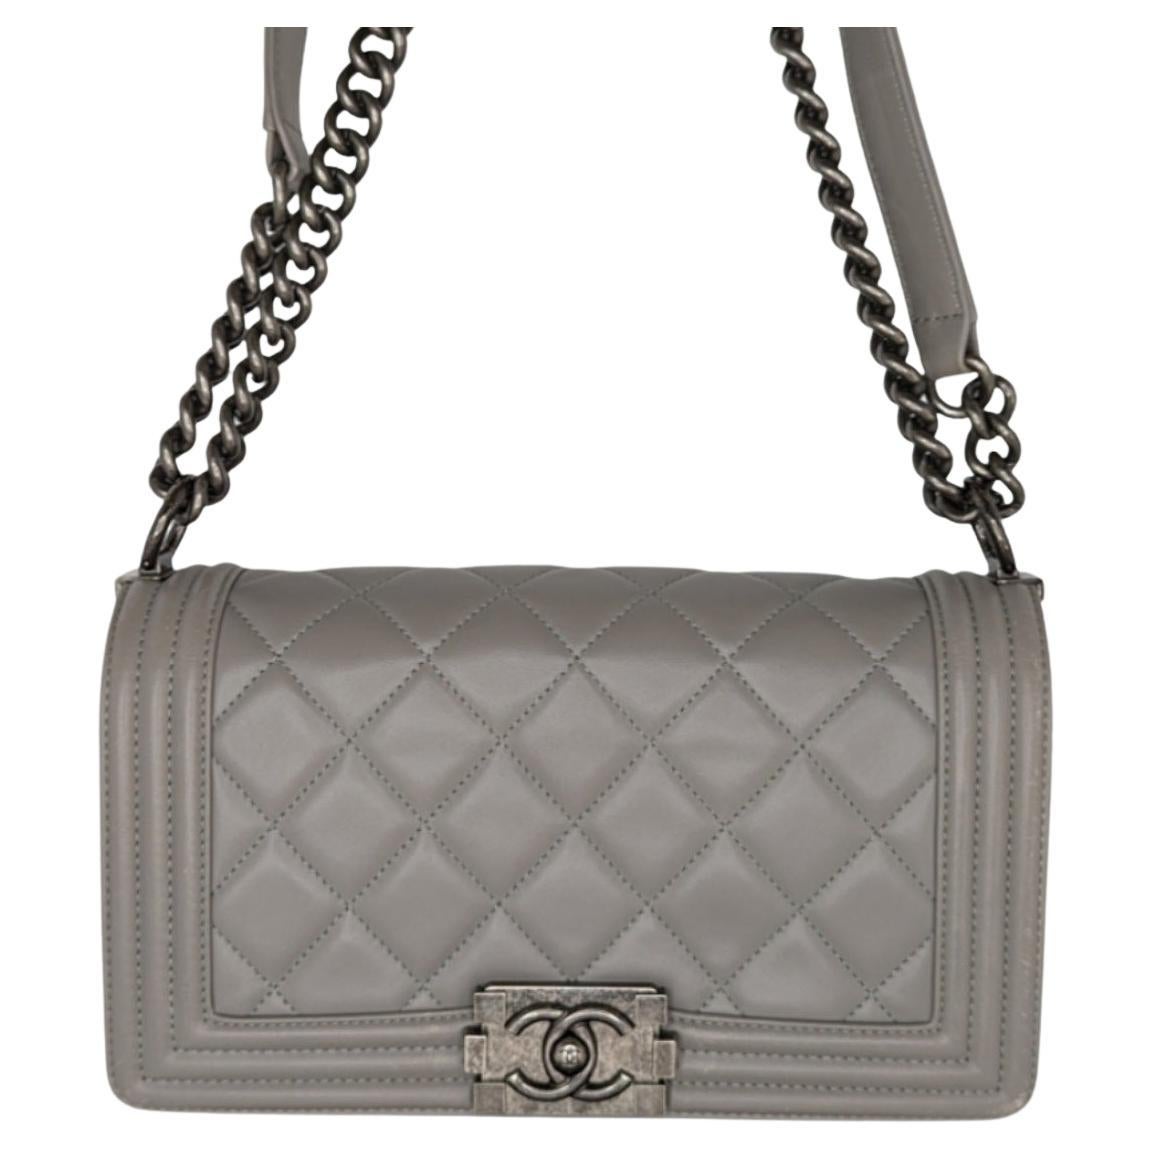 Gray Chanel Bag - 269 For Sale on 1stDibs